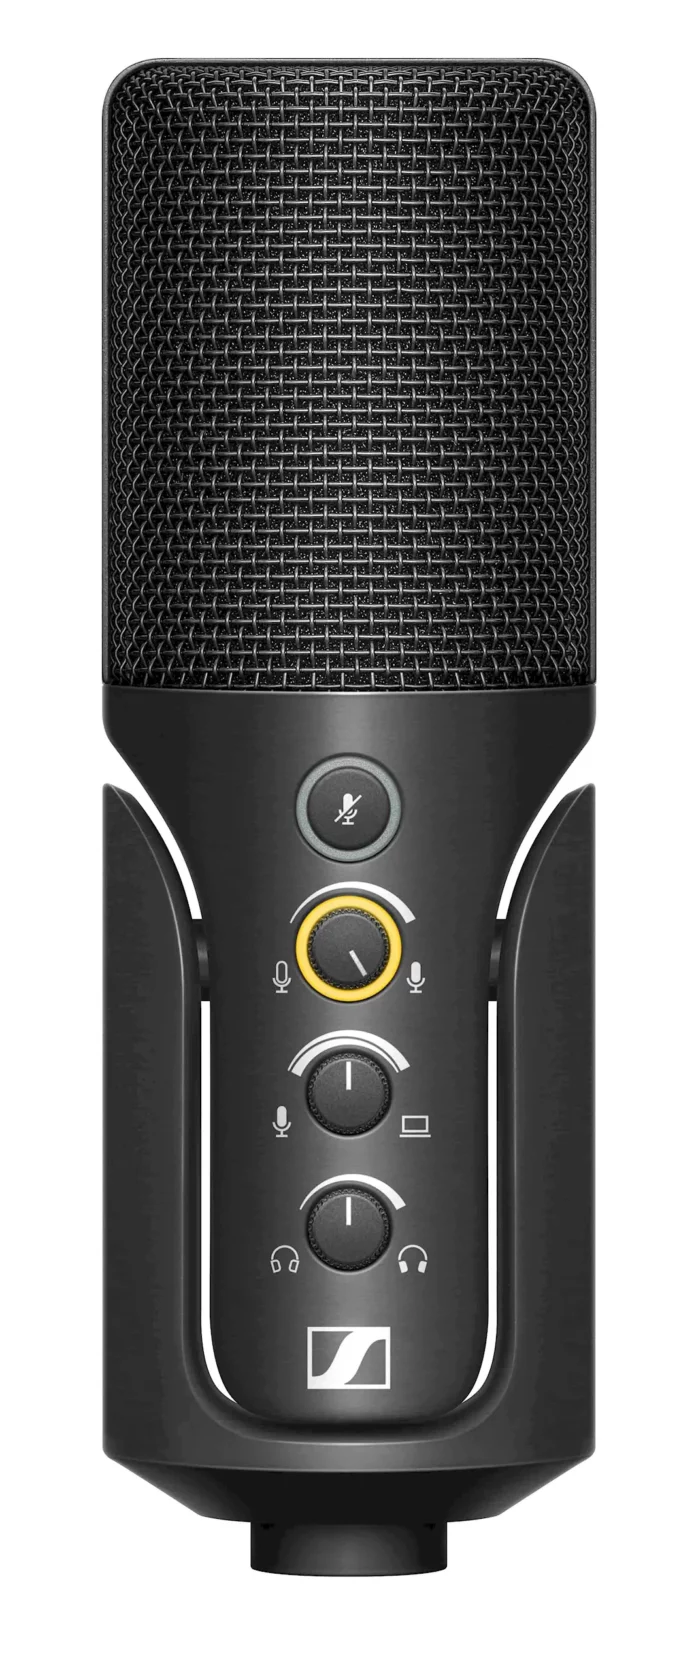 Sennheiser ra mắt microphone Profile USB dành cho streaming và podcast